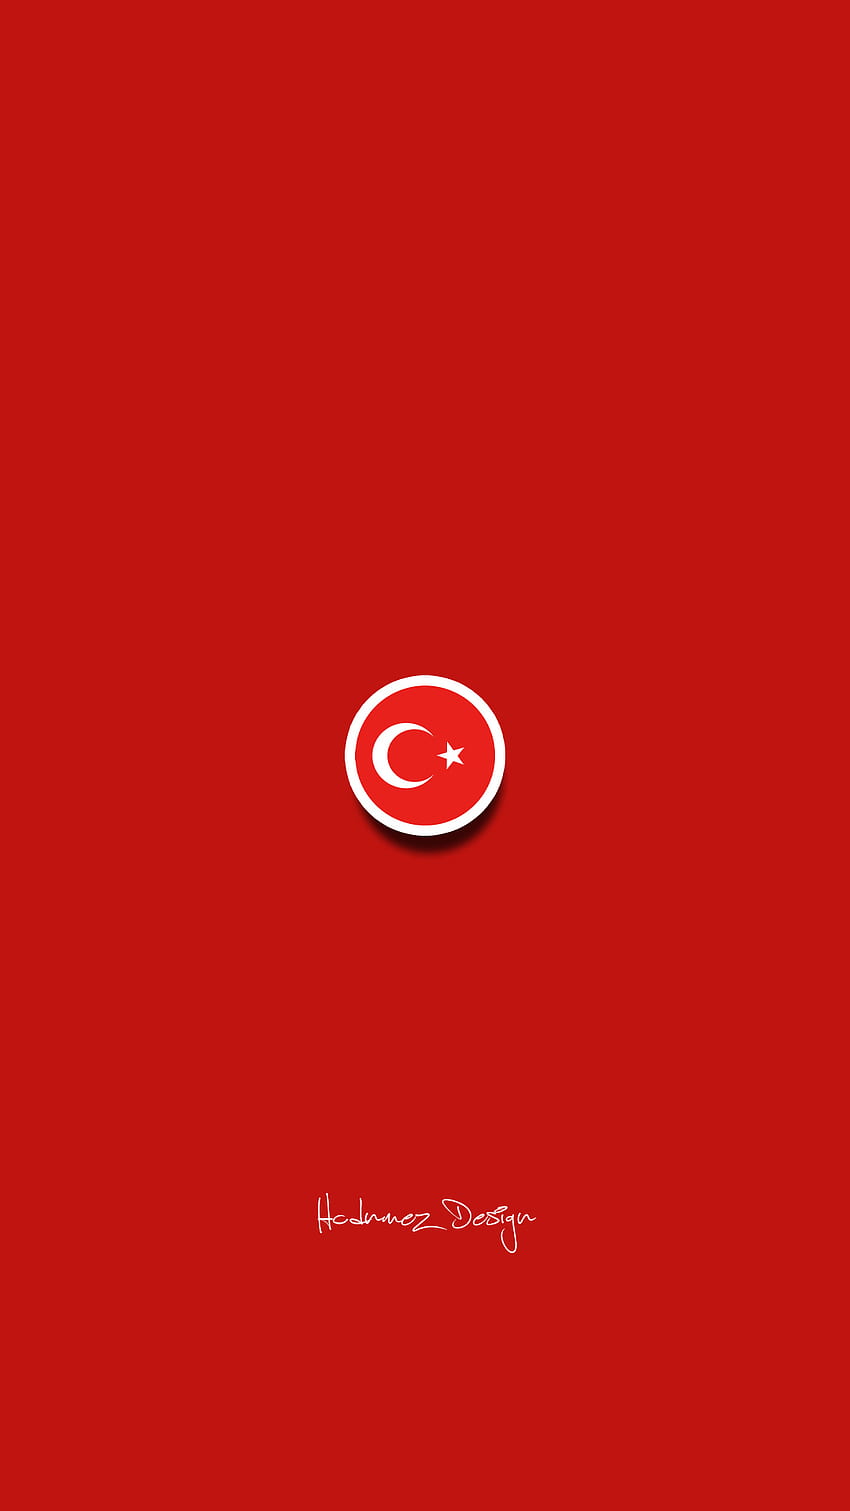 TÜRK BAYRAĞI, TURKISH FLAG, HCDNMEZ DESIGN, TÜRKİYE, TURKISH, BAYRAK, bozkurt HD phone wallpaper